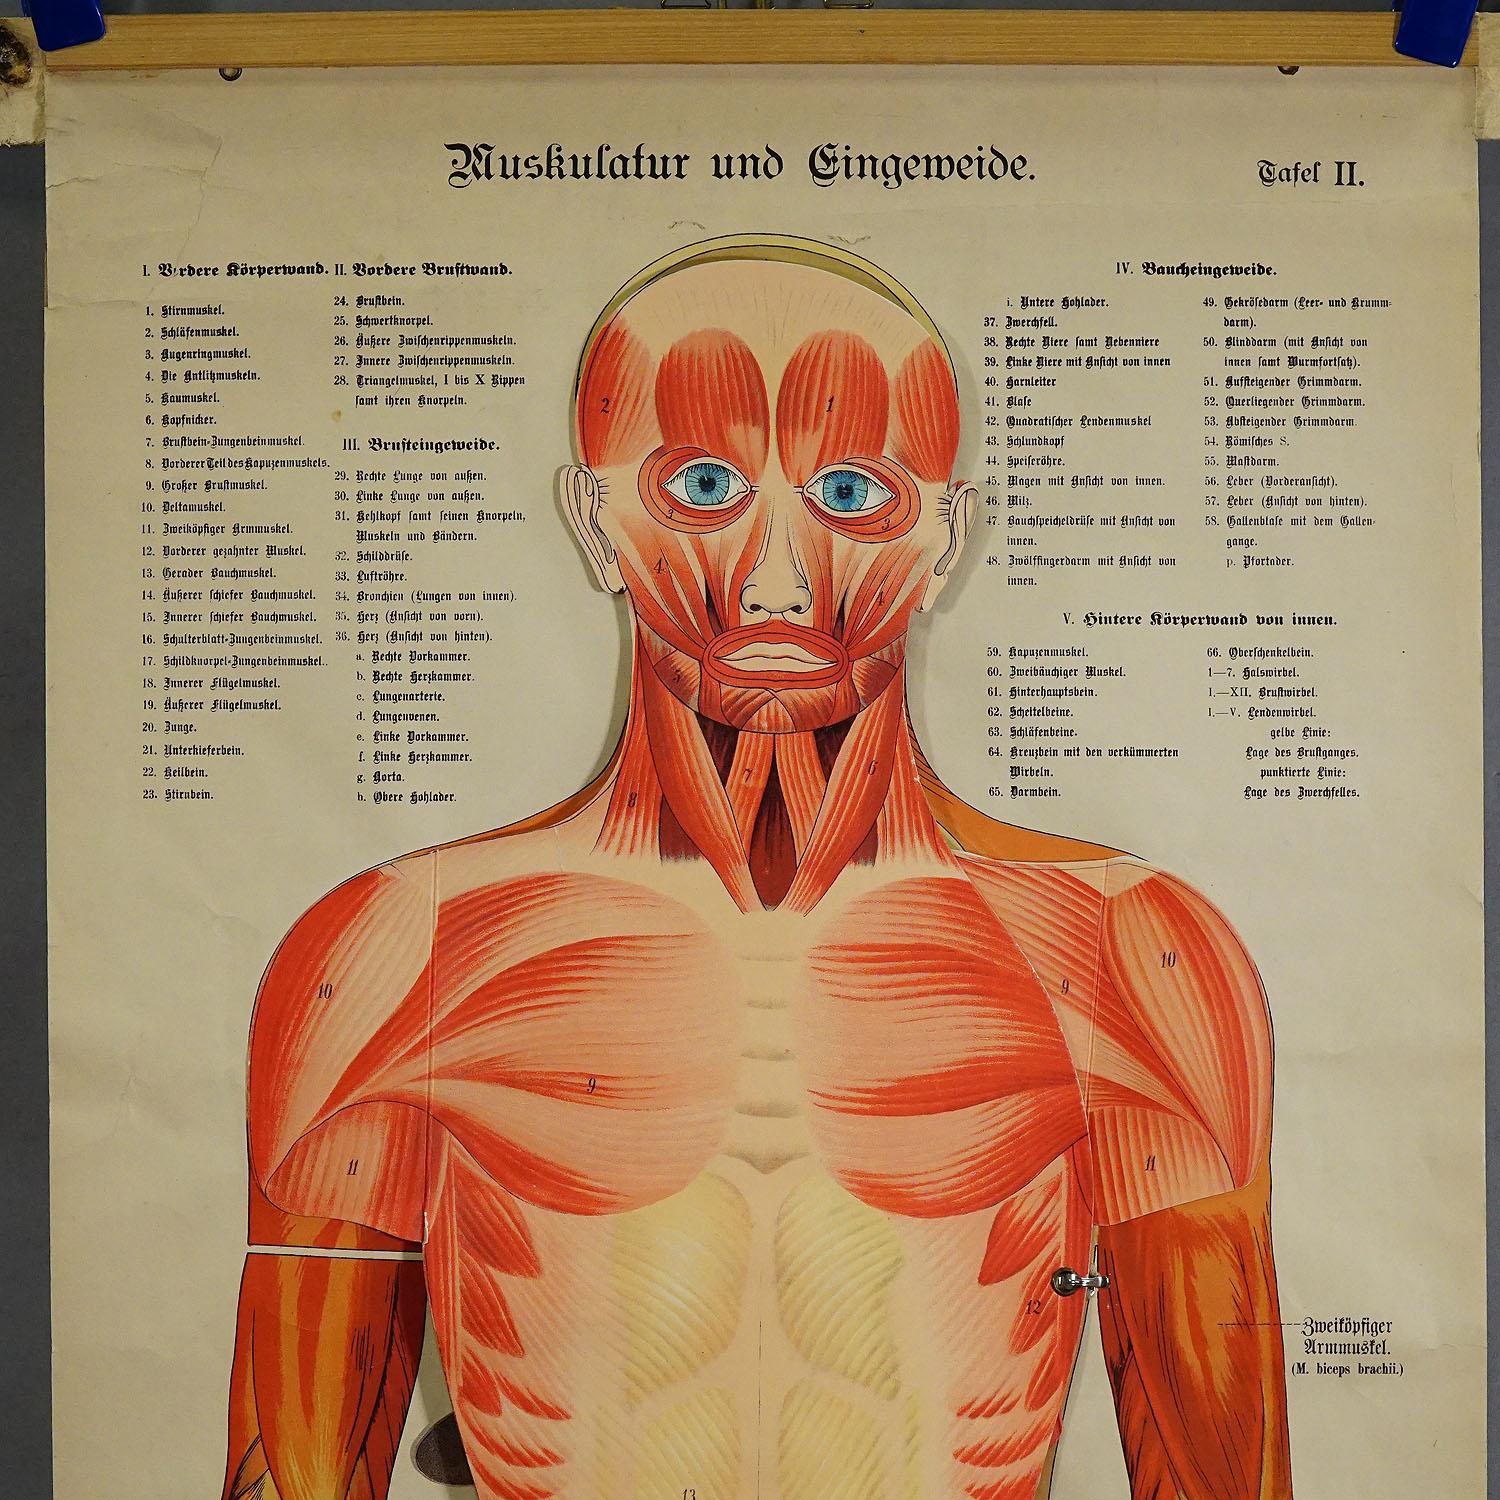 Antike klappbare Anatomische Wandtafel mit menschlicher Muskulatur

Die seltene anatomische Wandtafel aus dem 19. Jahrhundert stellt die menschliche Muskulatur und die inneren Organe dar. Die mehrfarbigen menschlichen Organe wie Lunge, Herz, Leber,